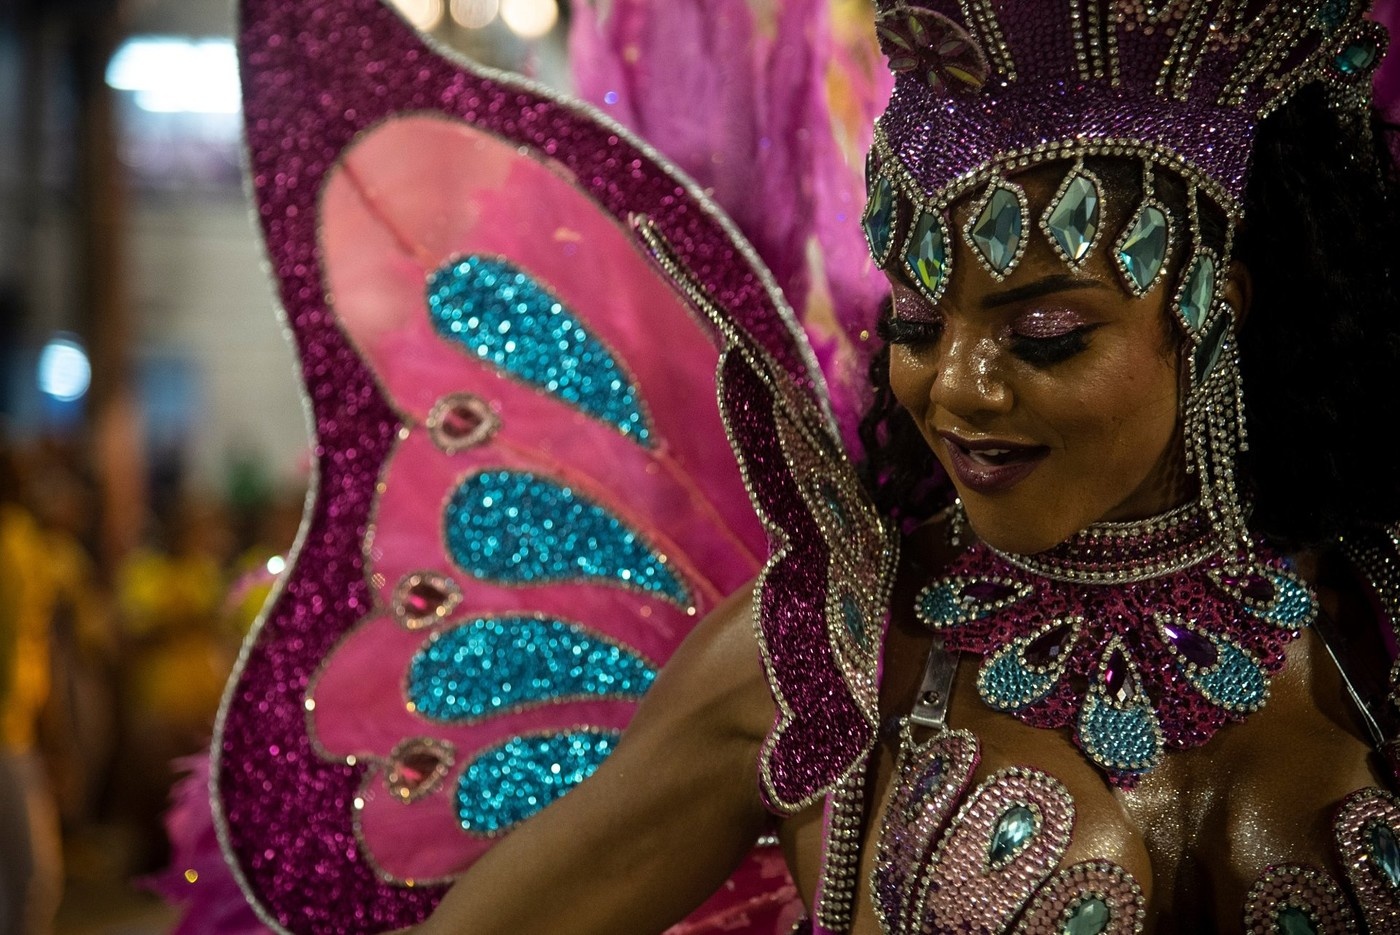 Участницы Бразильского карнавала в самых откровенных нарядах (25 фото)